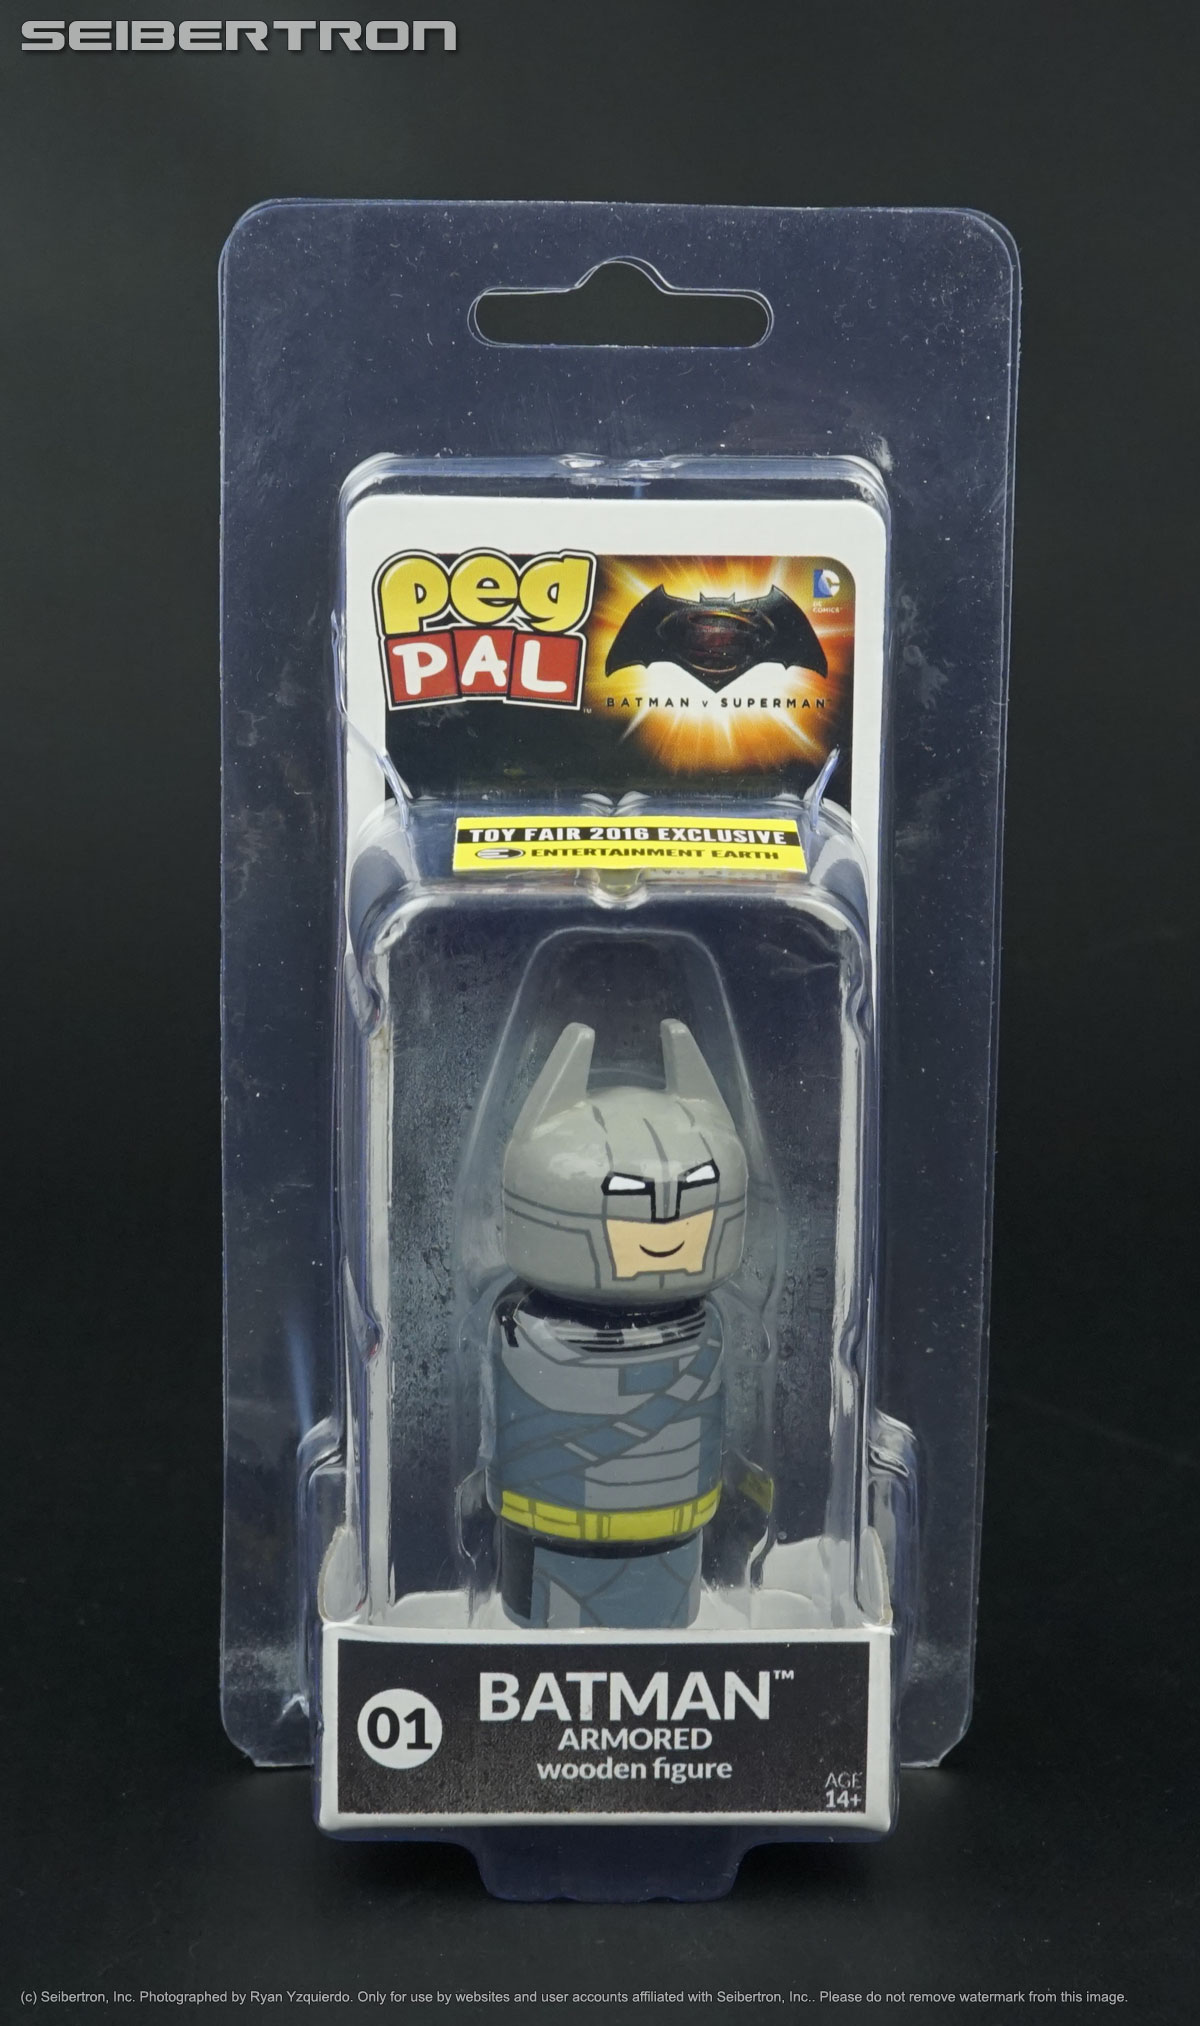 Armored BATMAN vs Superman Peg Pal 01 Wooden Toy Fair DC Comics Bif Bang Pow